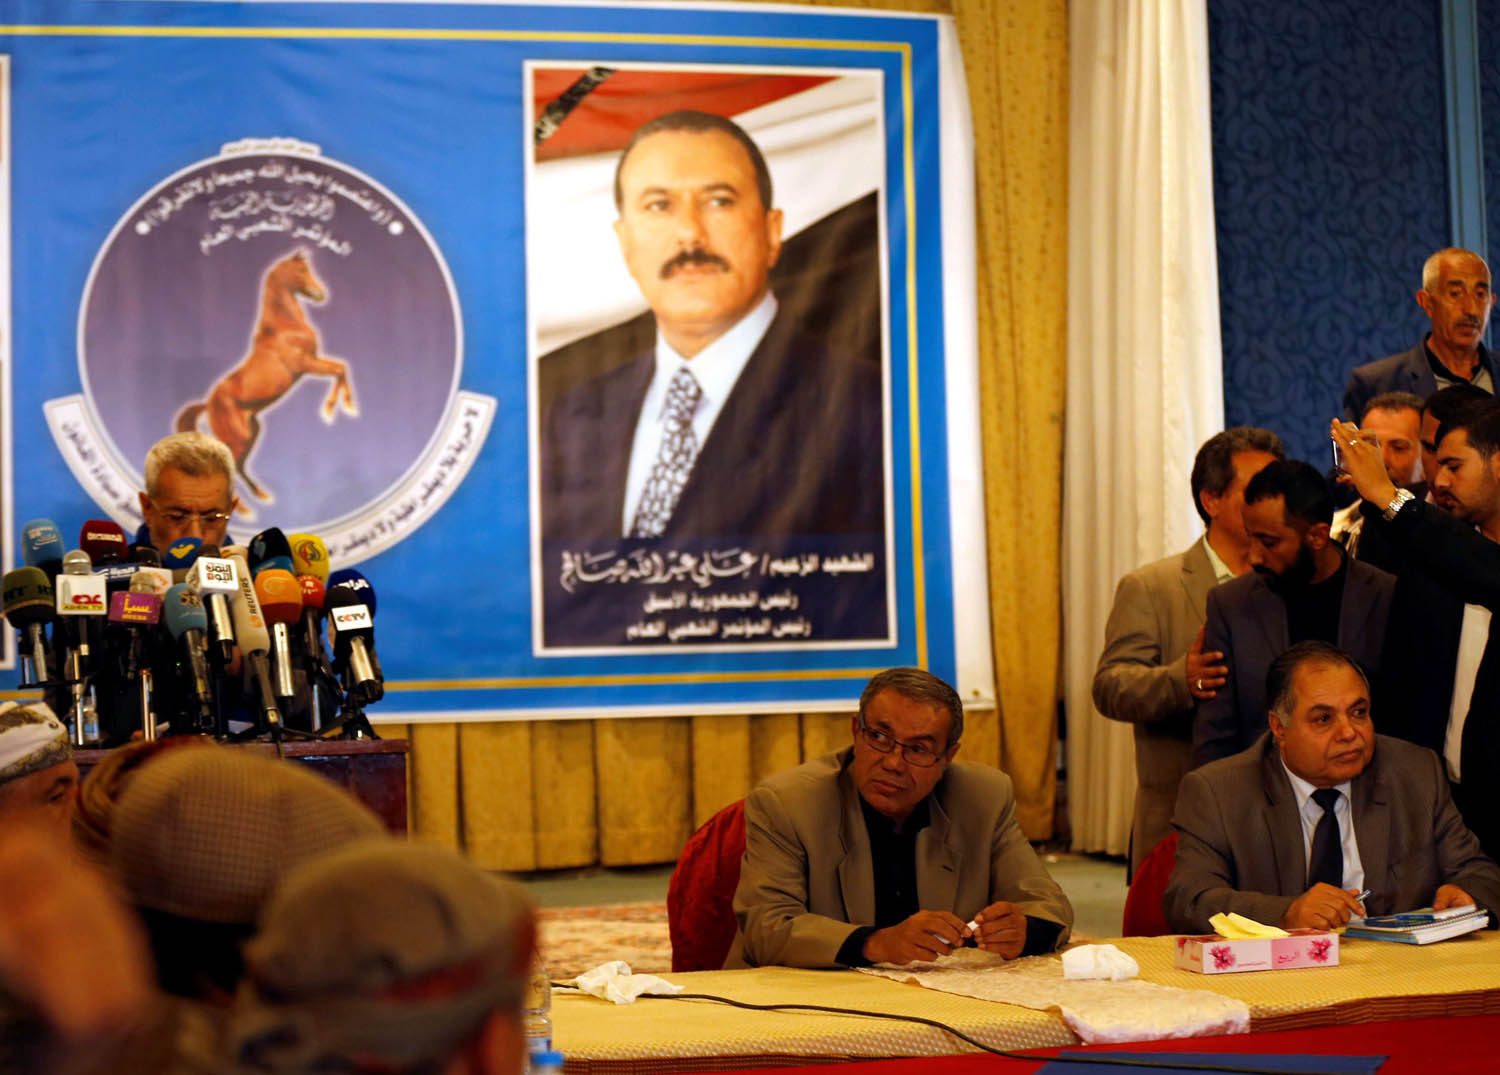 اعضاء في المؤتمر الشعبي العام يؤبنون الرئيس اليمني السابق علي عبدالله صالح